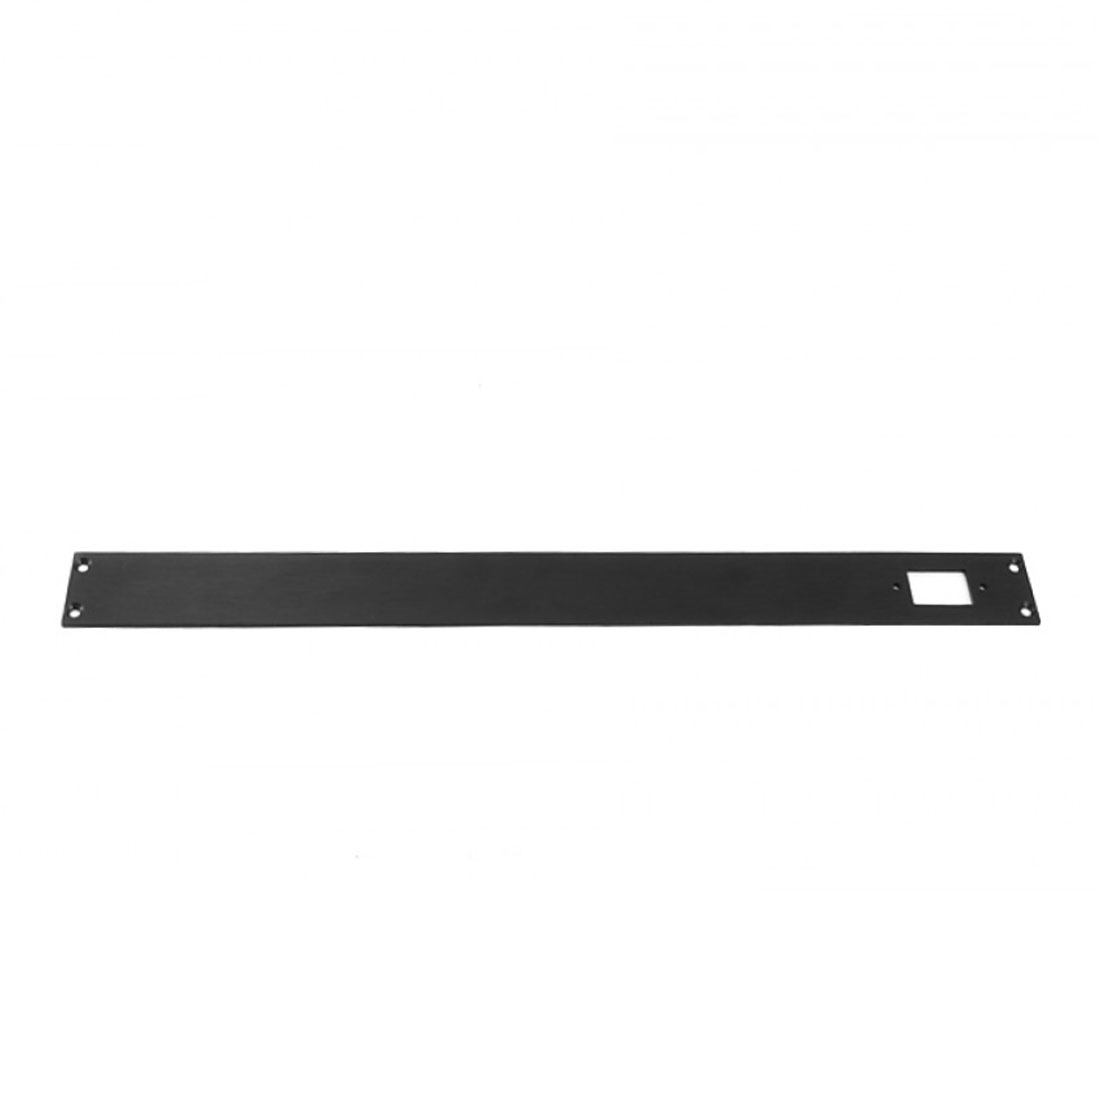 1NSLA01170N - 1U rack krabice s lištou, 170mm, 10mm - panel černý, AL víka